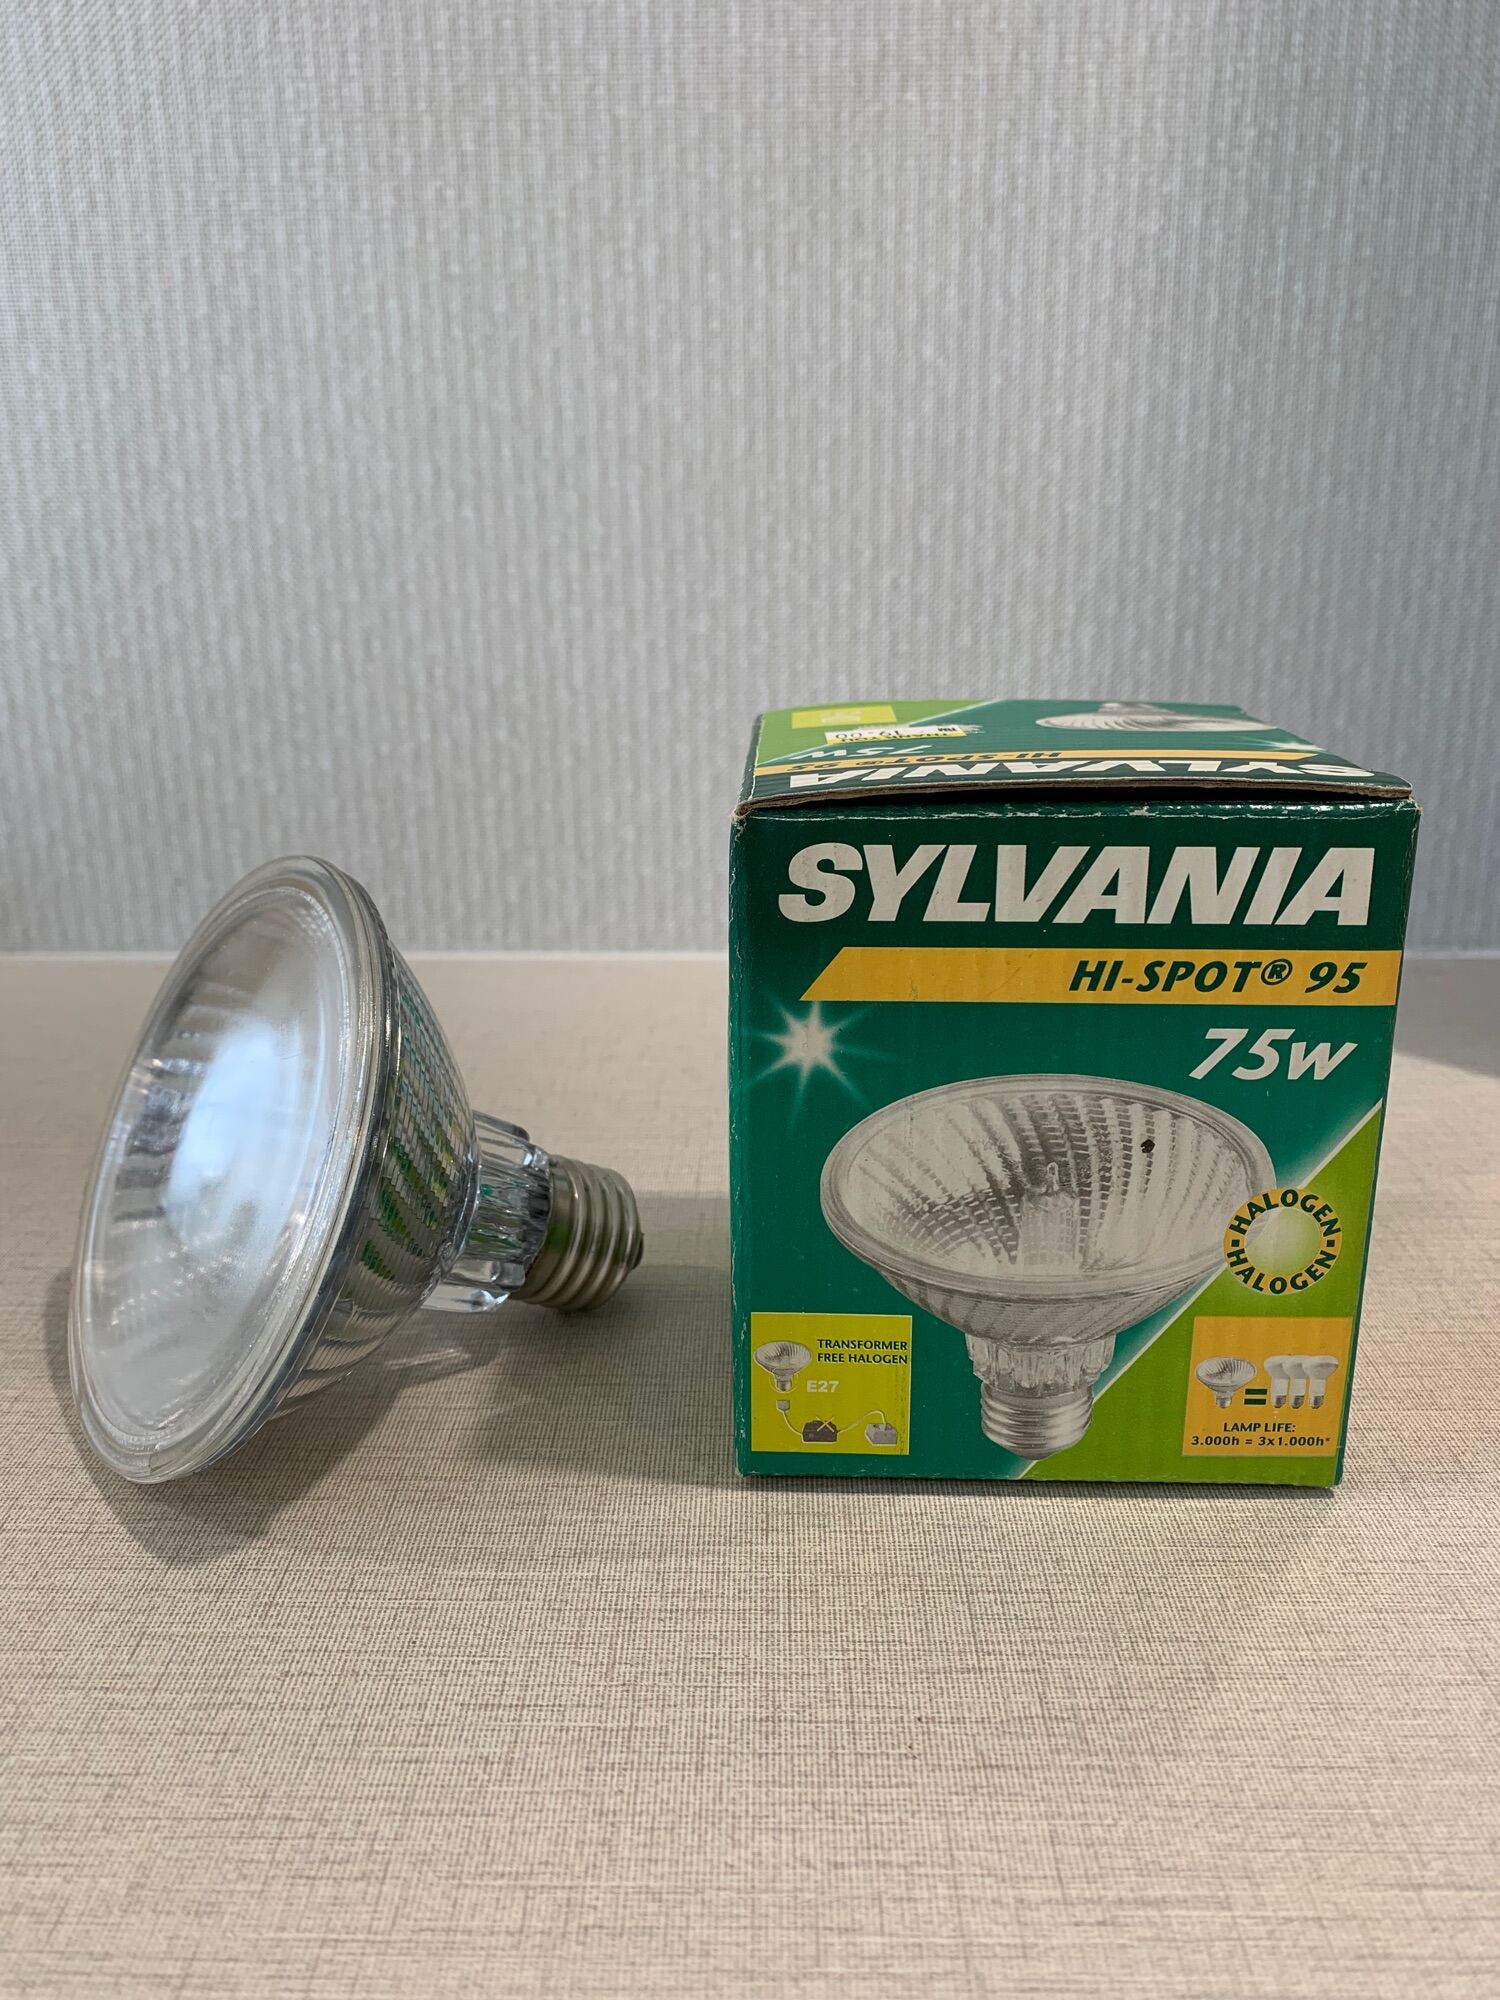 10 x Sylvania Hi-pin Eco 18 W 240 V G9 à économie dénergie ampoule Capsule Halogène 